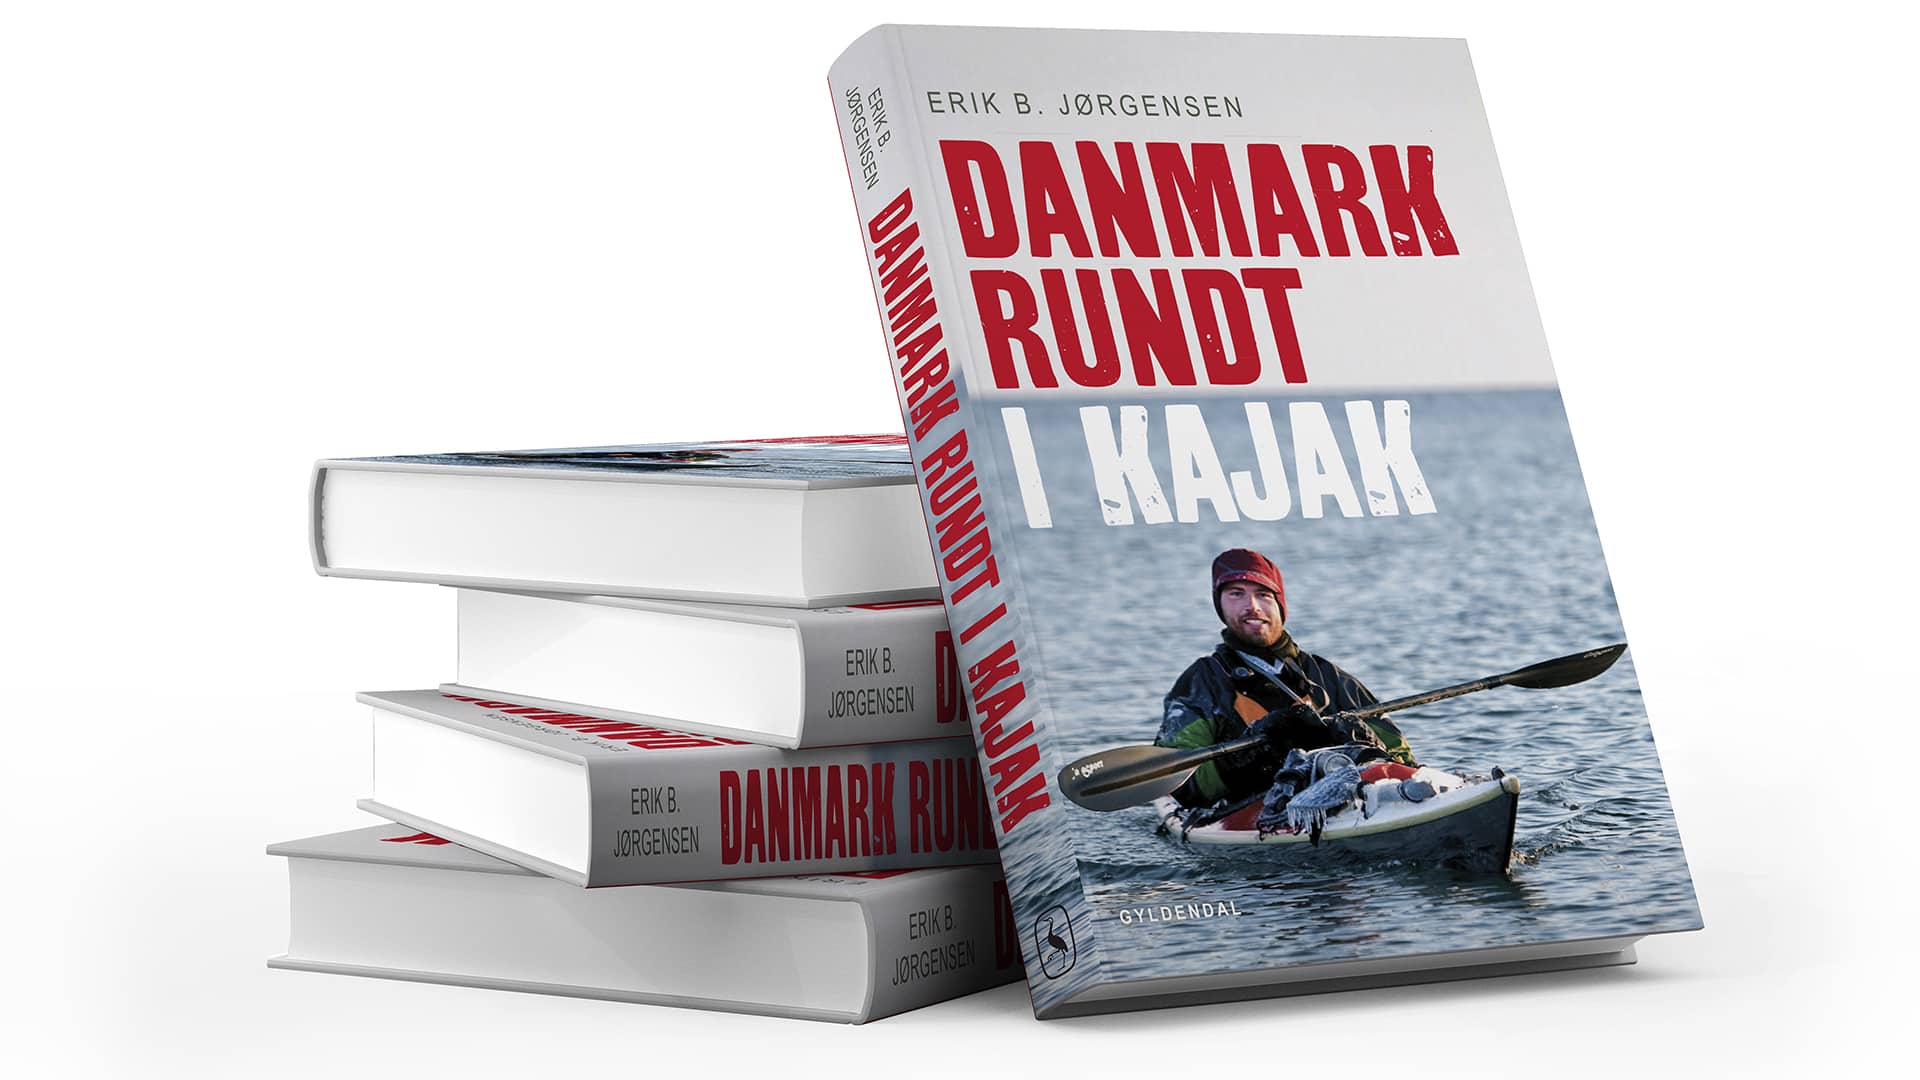 Danmark rundt i kajak, isvinteren 2009-10, foredrag, Erik B. Jørgensen, bogstak